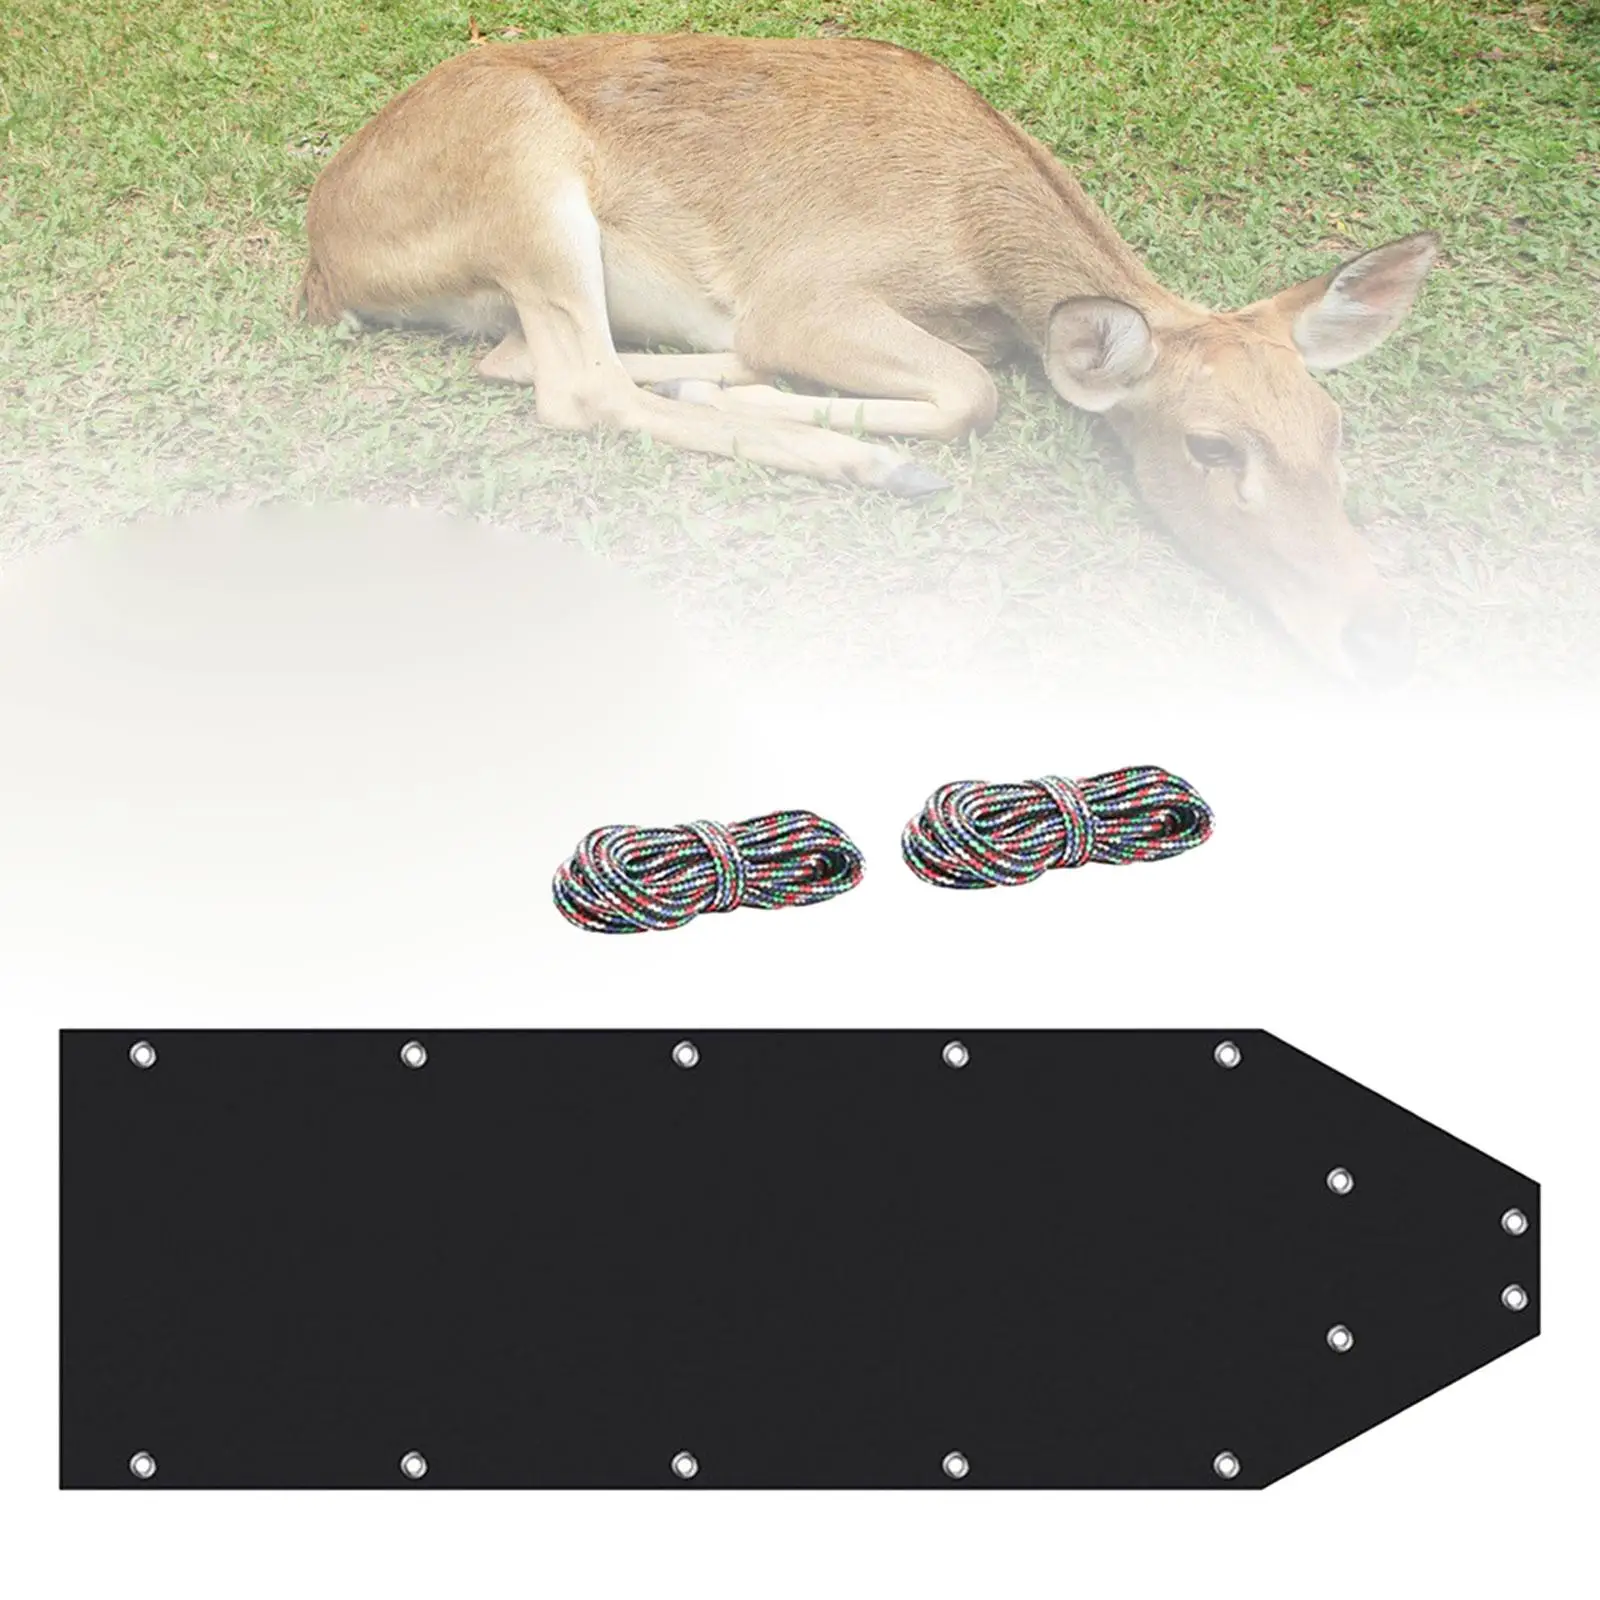 Deer Drag Sled Multipurpose Game Slide for Transporting Fishing Firewood